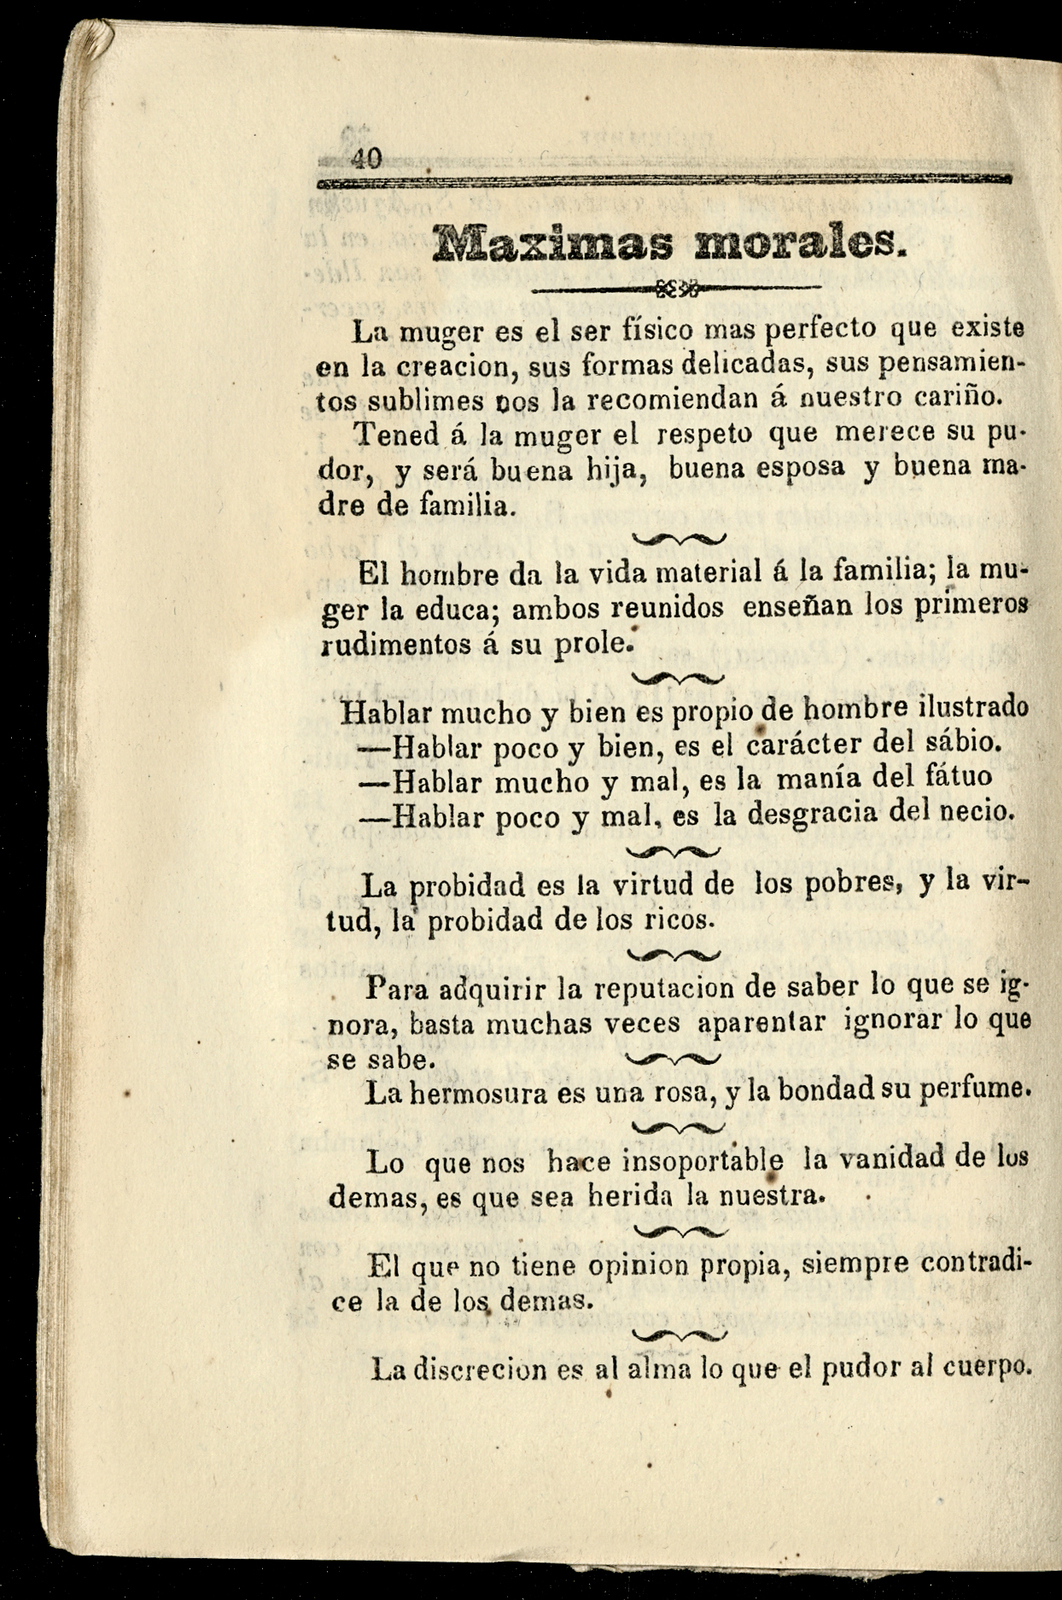 Vigesimotercero Calendario [Angelopolitano], de Rivera, arreglado al meridiano de Puebla, para el año de 1877